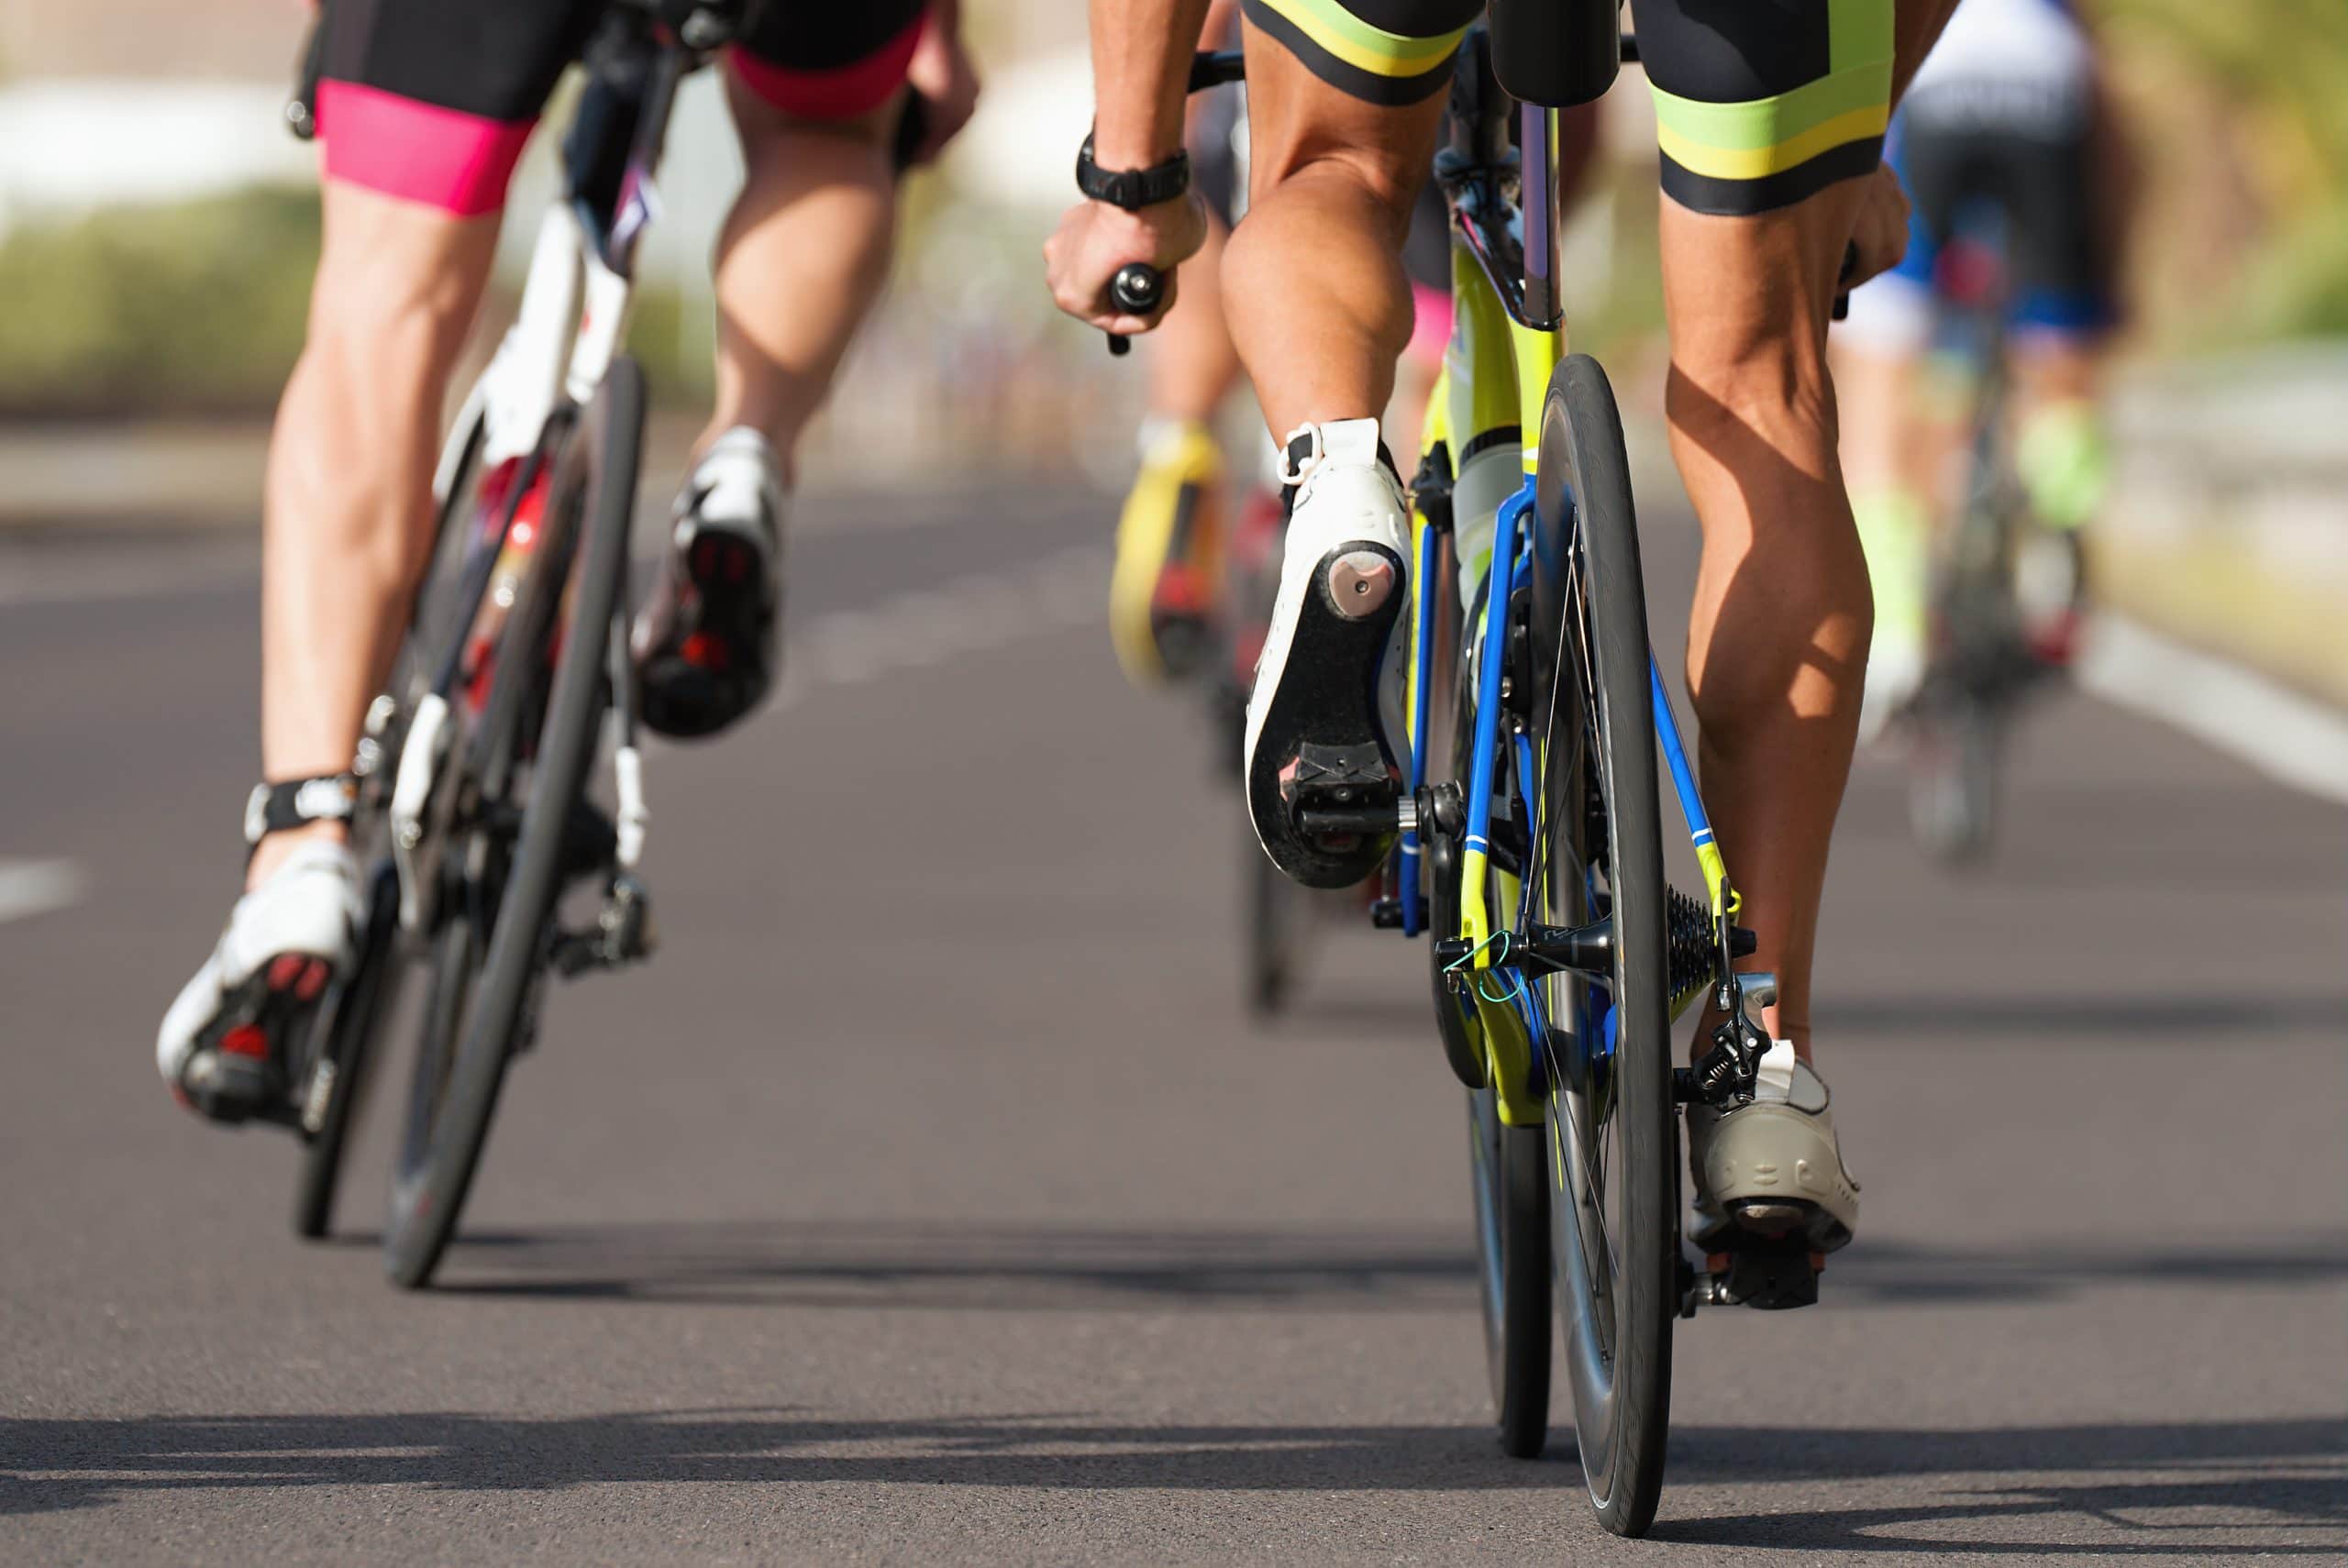 Foto de dois ciclistas pedalando em bicicletas e trajes de corrida. Os ciclistas estão de costas. As bicicletas estão no asfalto. Em primeiro plano, o ciclista usa sapatilha branca e uma bermuda preta com faixa amarela. Em segundo plano, um ciclista usa sapatilha branca, com bermuda preta e faixa rosa.